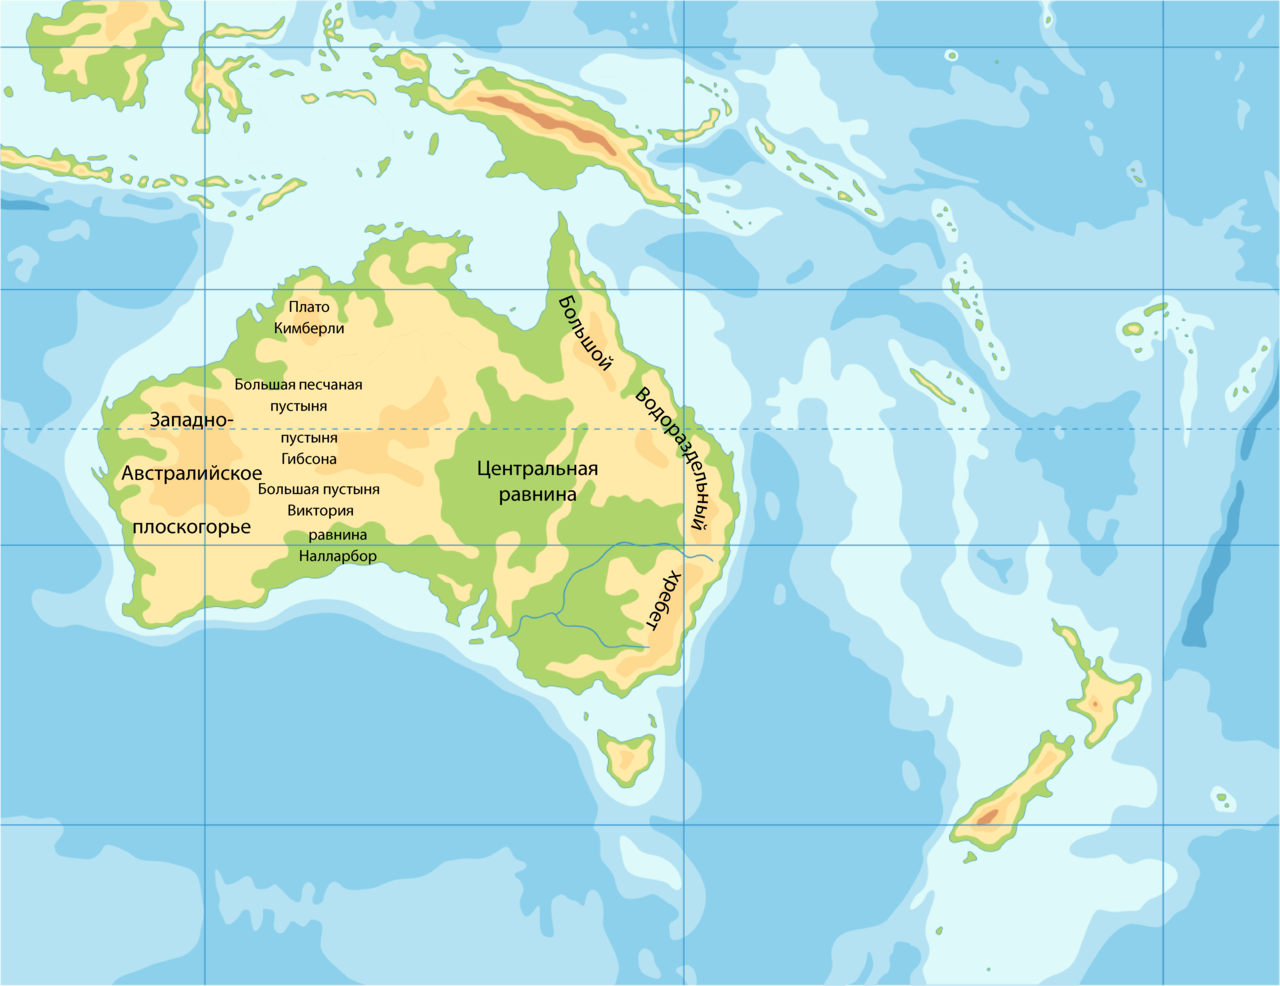 Формы рельефа Австралии на карте. Центральная равнина Австралии на карте контурной. Западно австралийское плоскогорье на карте Австралии. Западноавстралийское пласкогорье на карте. Большой водораздельный хребет полушарие